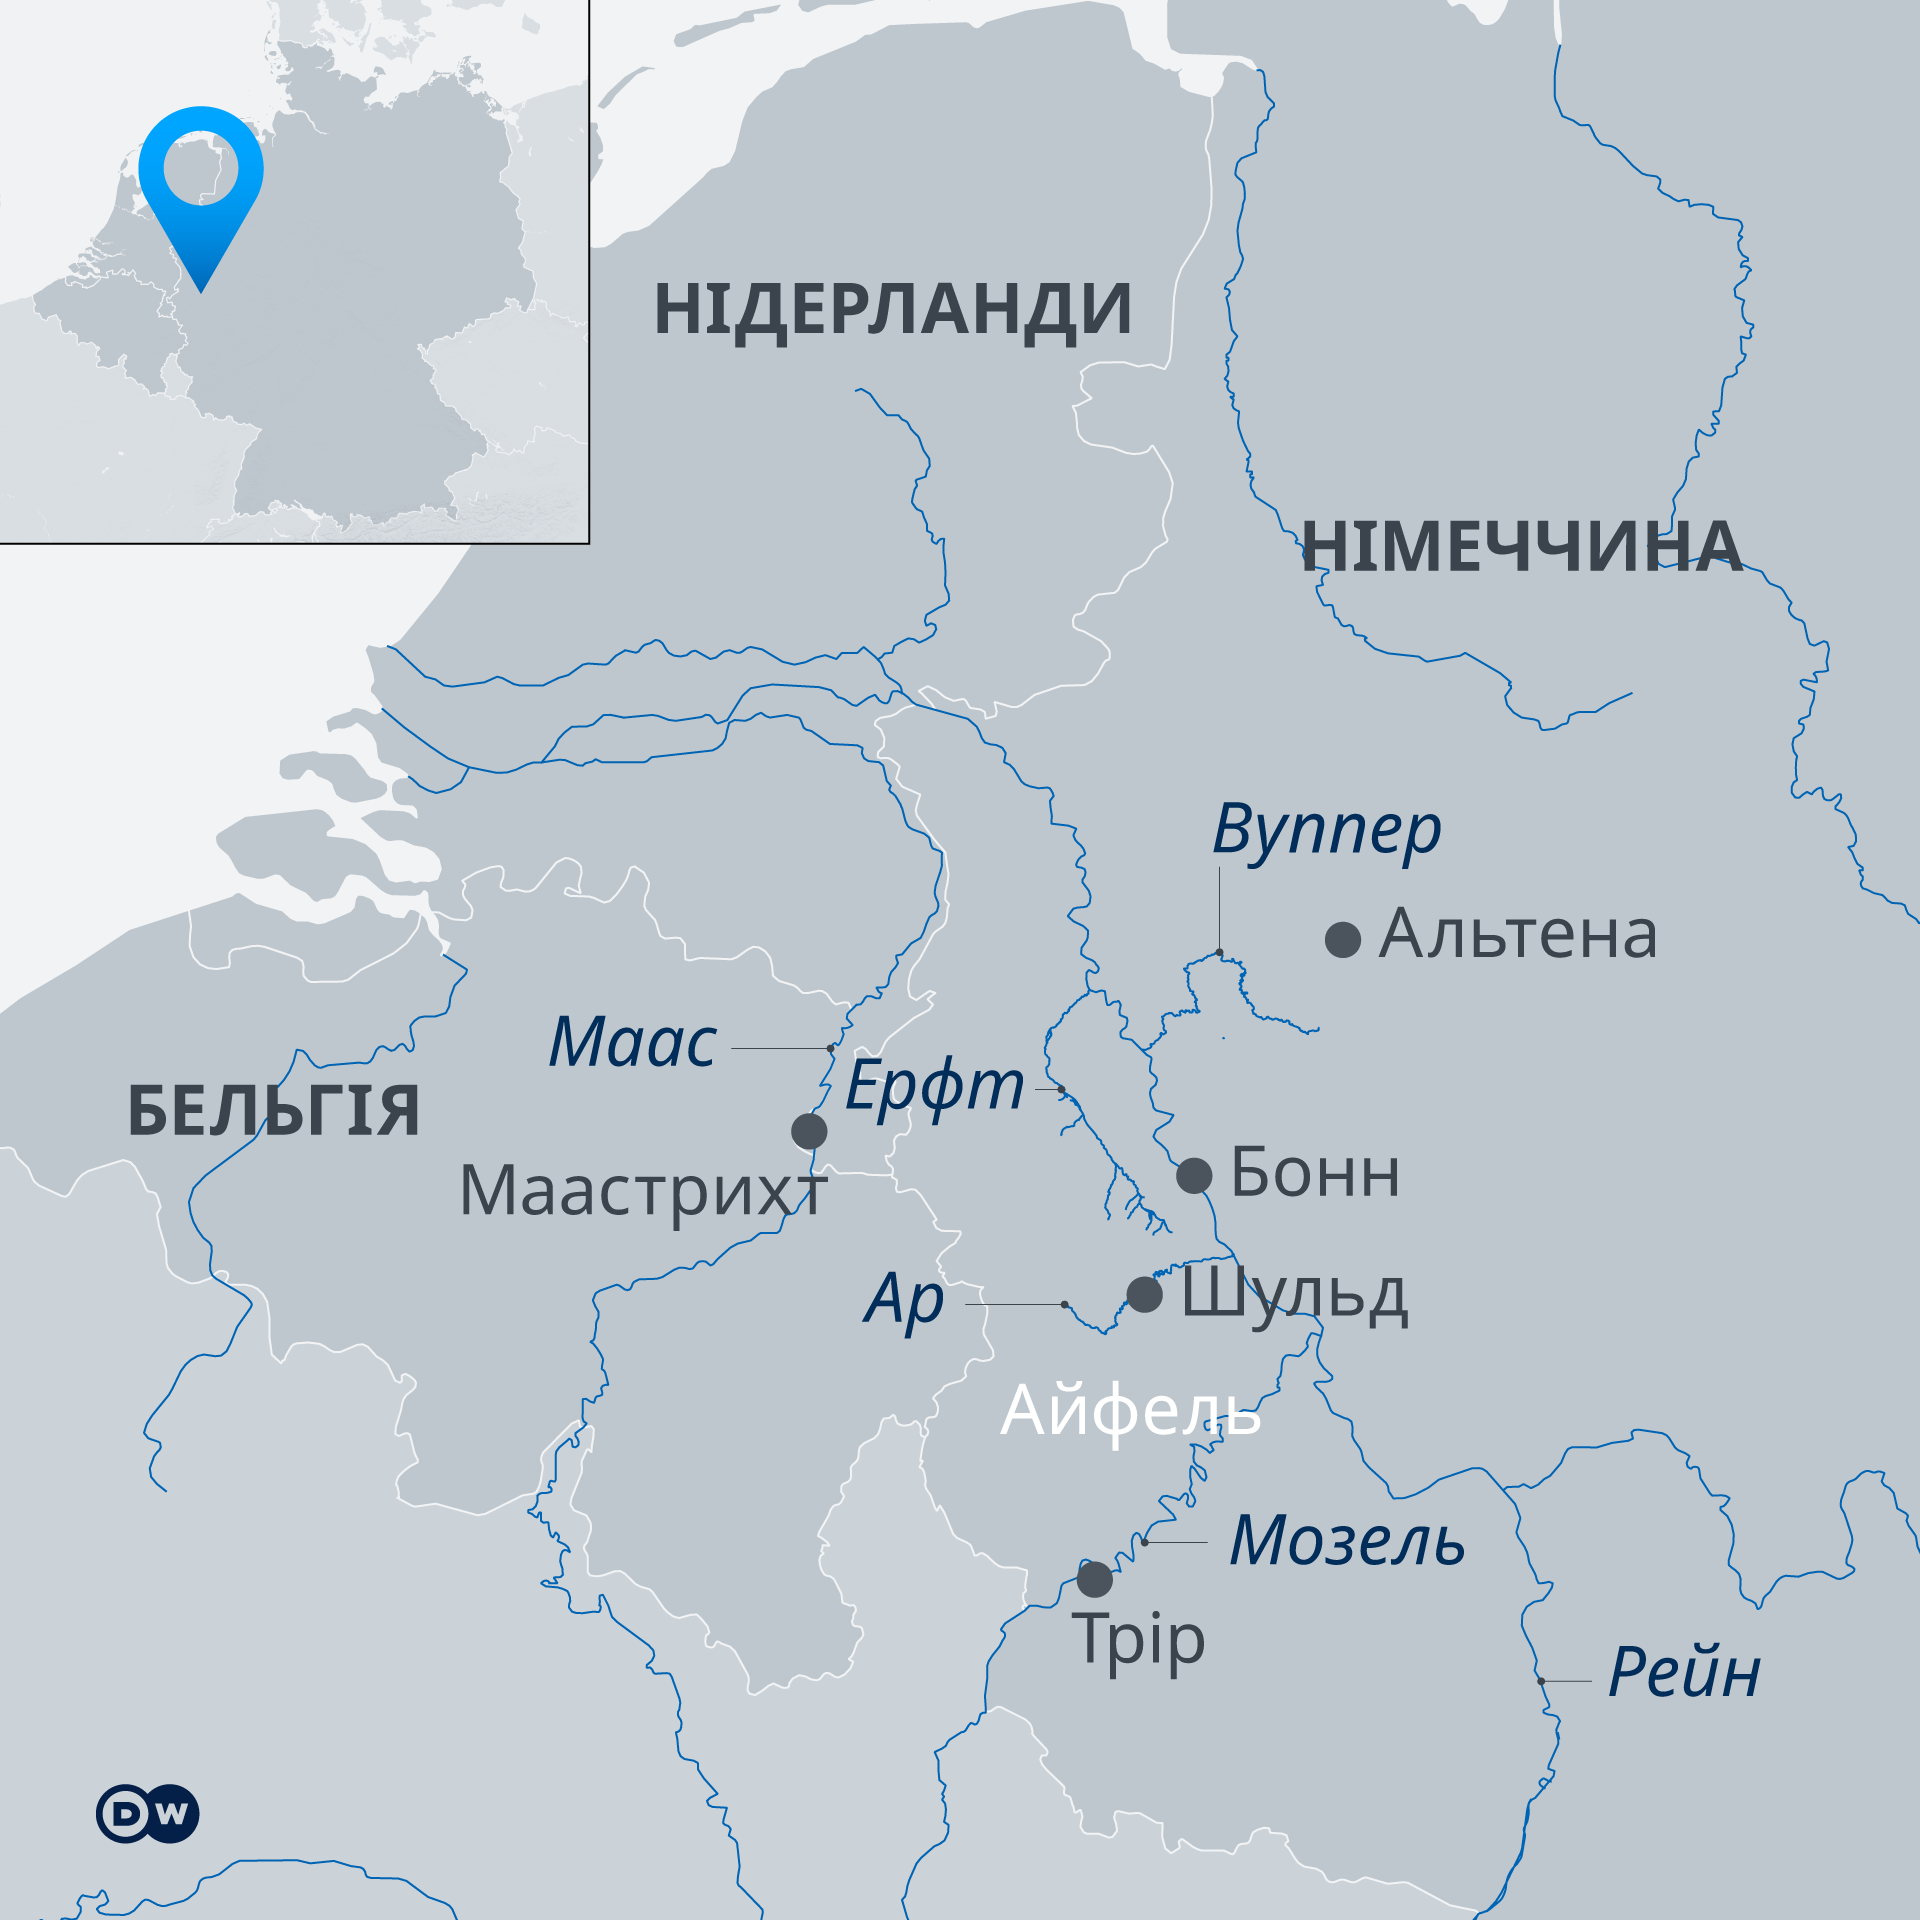 Регіони в Німеччині та Бельгії, що постраждали від катастрофічної повені